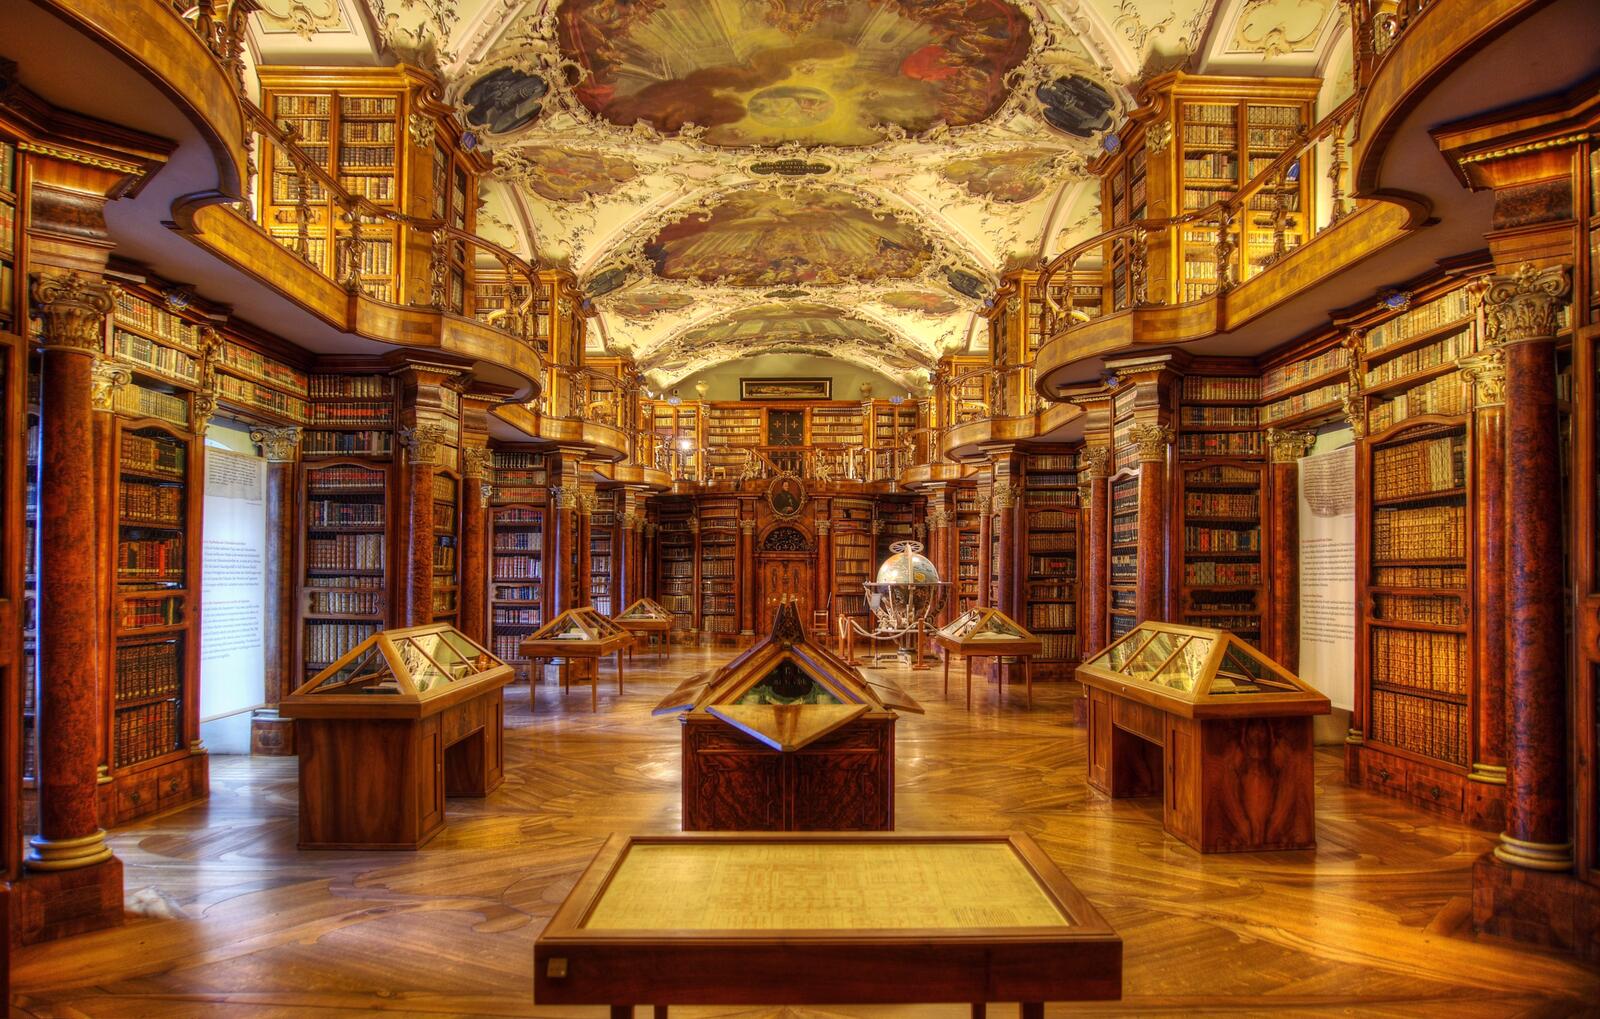 Библиотека без людей. Библиотека монастыря Святого Галла в Швейцарии. Монастырь Санкт Галлен библиотека. Библиотека аббатства Святого Галла. Библиотека аббатства Святого Галла, Санкт-Галлен (Швейцария).